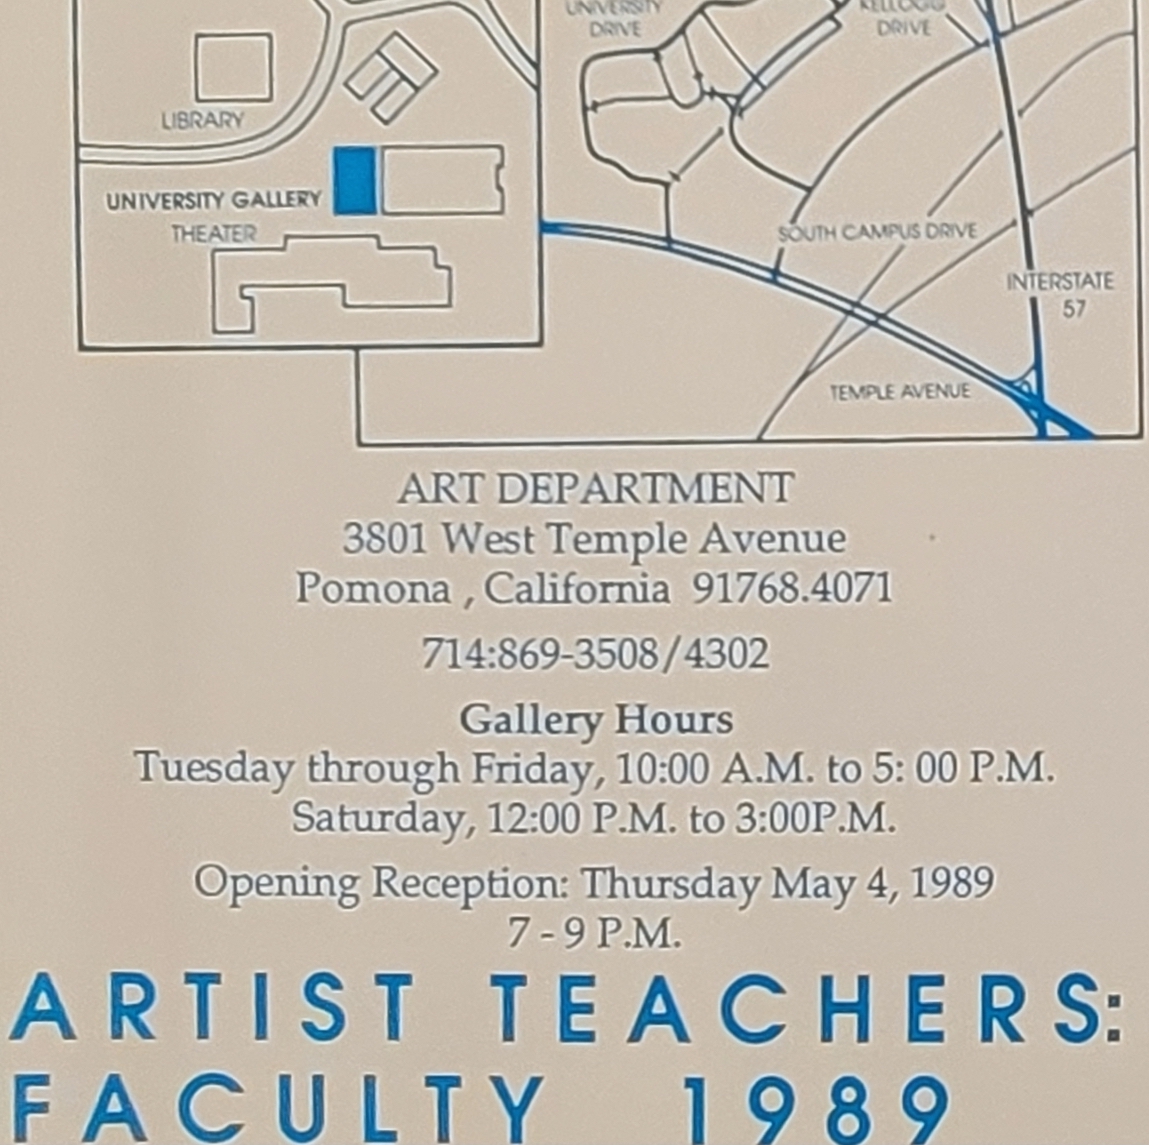 Artist teachers faculty 1989